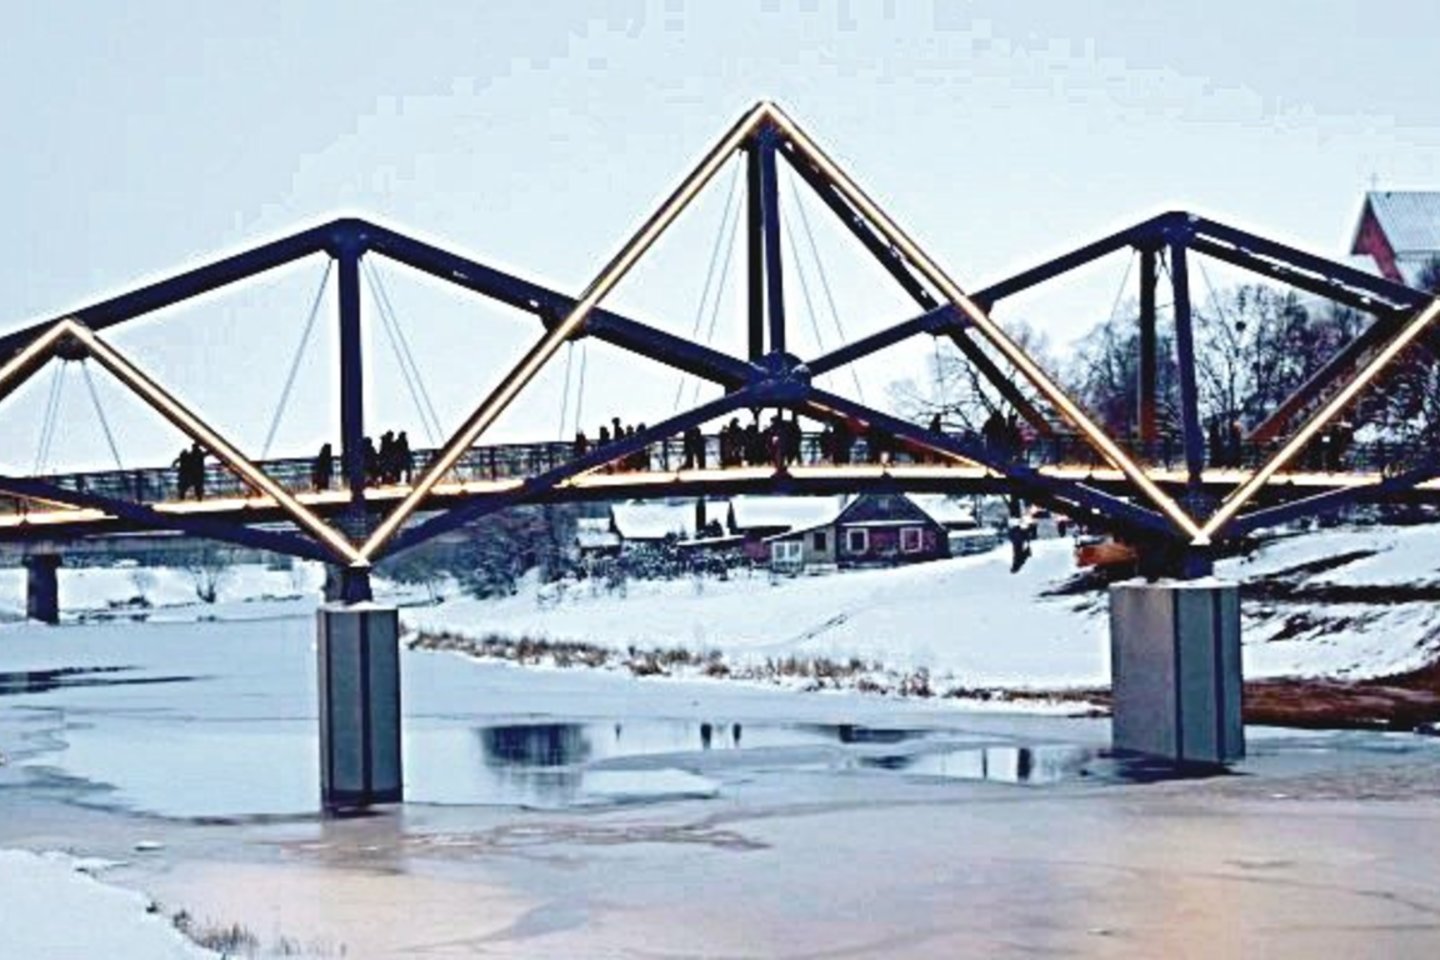 Tiltas jungia dvi istorines Lietuvos žemes – Aukštaitiją ir Žemaitiją, todėl tokiam statiniui buvo ieškoma išskirtinių formų. Suprojektuoti nestandartinį tiltą buvo patikėta žinomam architektui J.R.Paliui.<br>V.Mockuvienės nuotr.